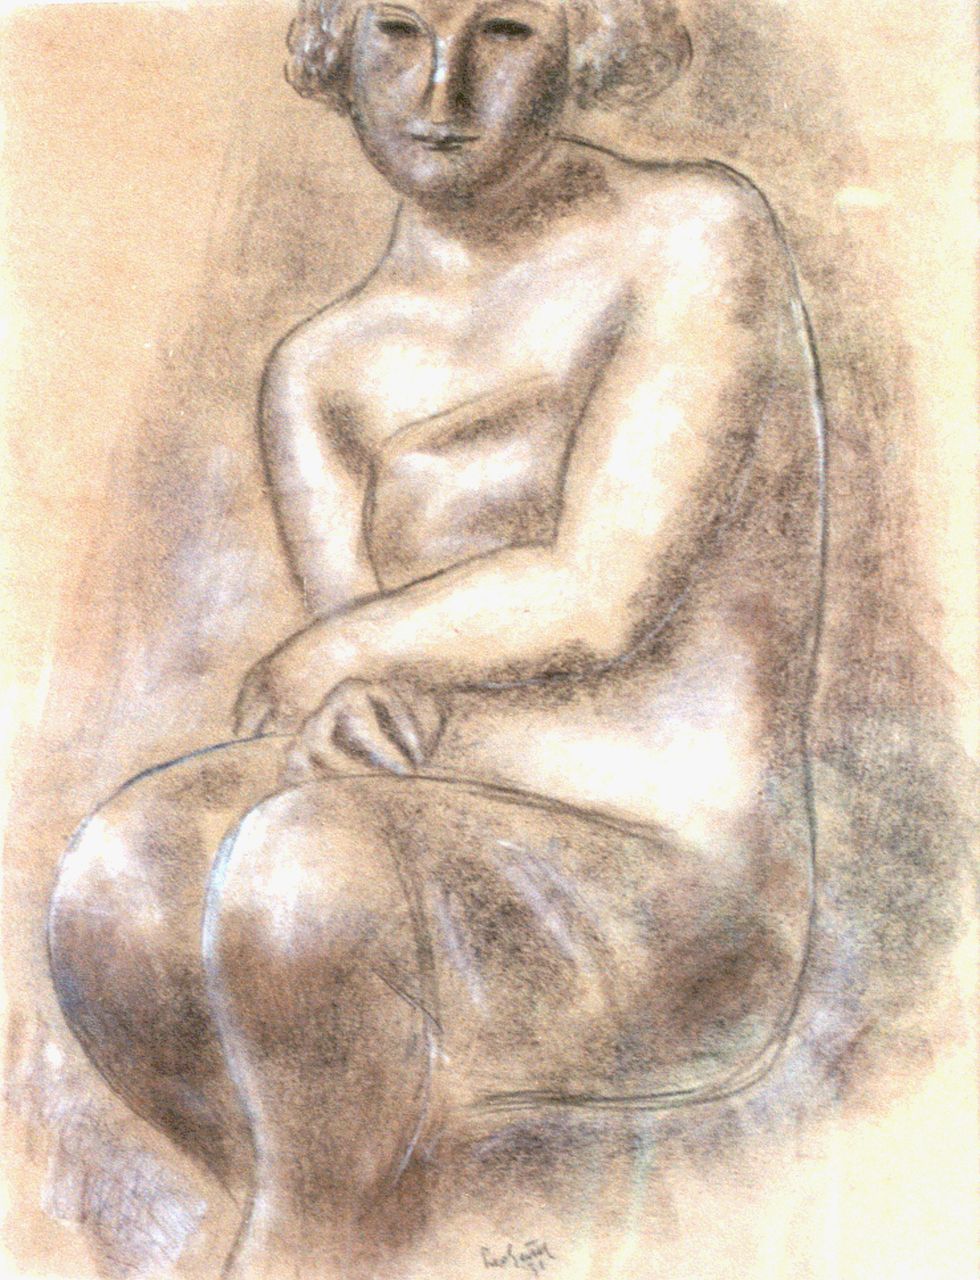 Gestel L.  | Leendert 'Leo' Gestel, Vrouw, krijt op papier 62,0 x 48,0 cm, gesigneerd middenonder en gedateerd '31